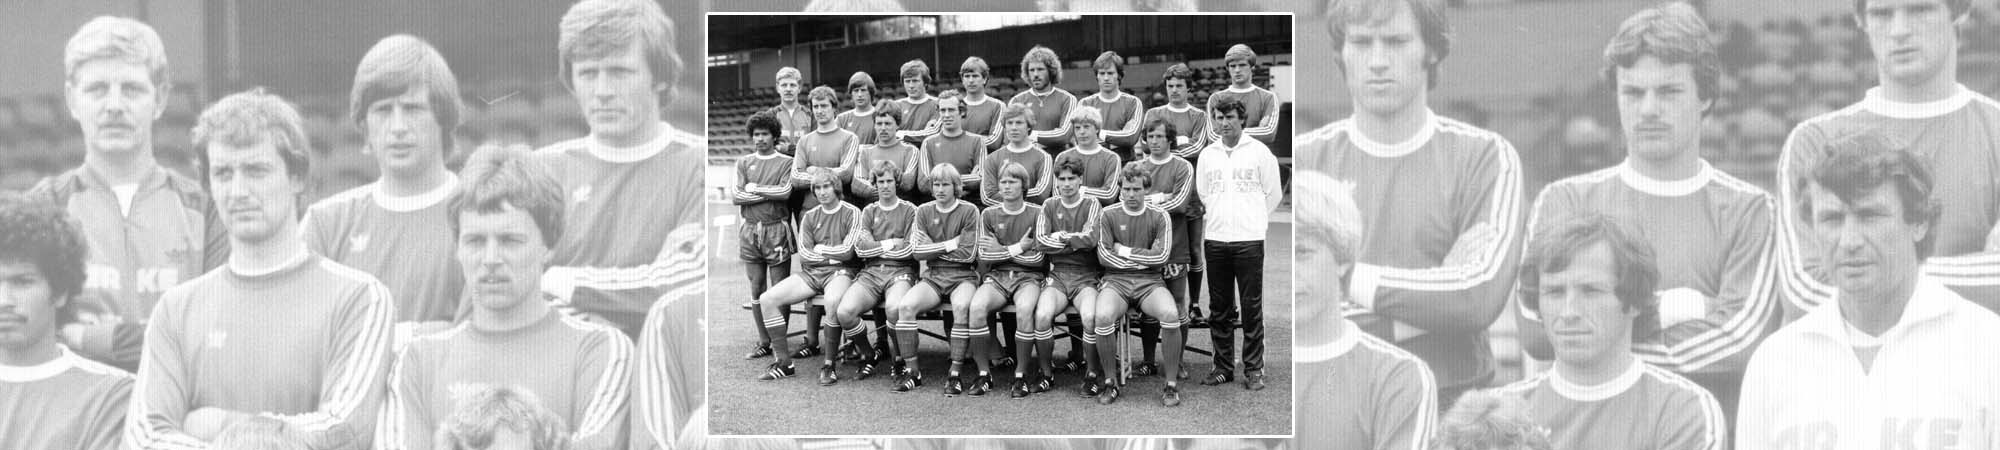 FC Twente seizoen 1979/1980